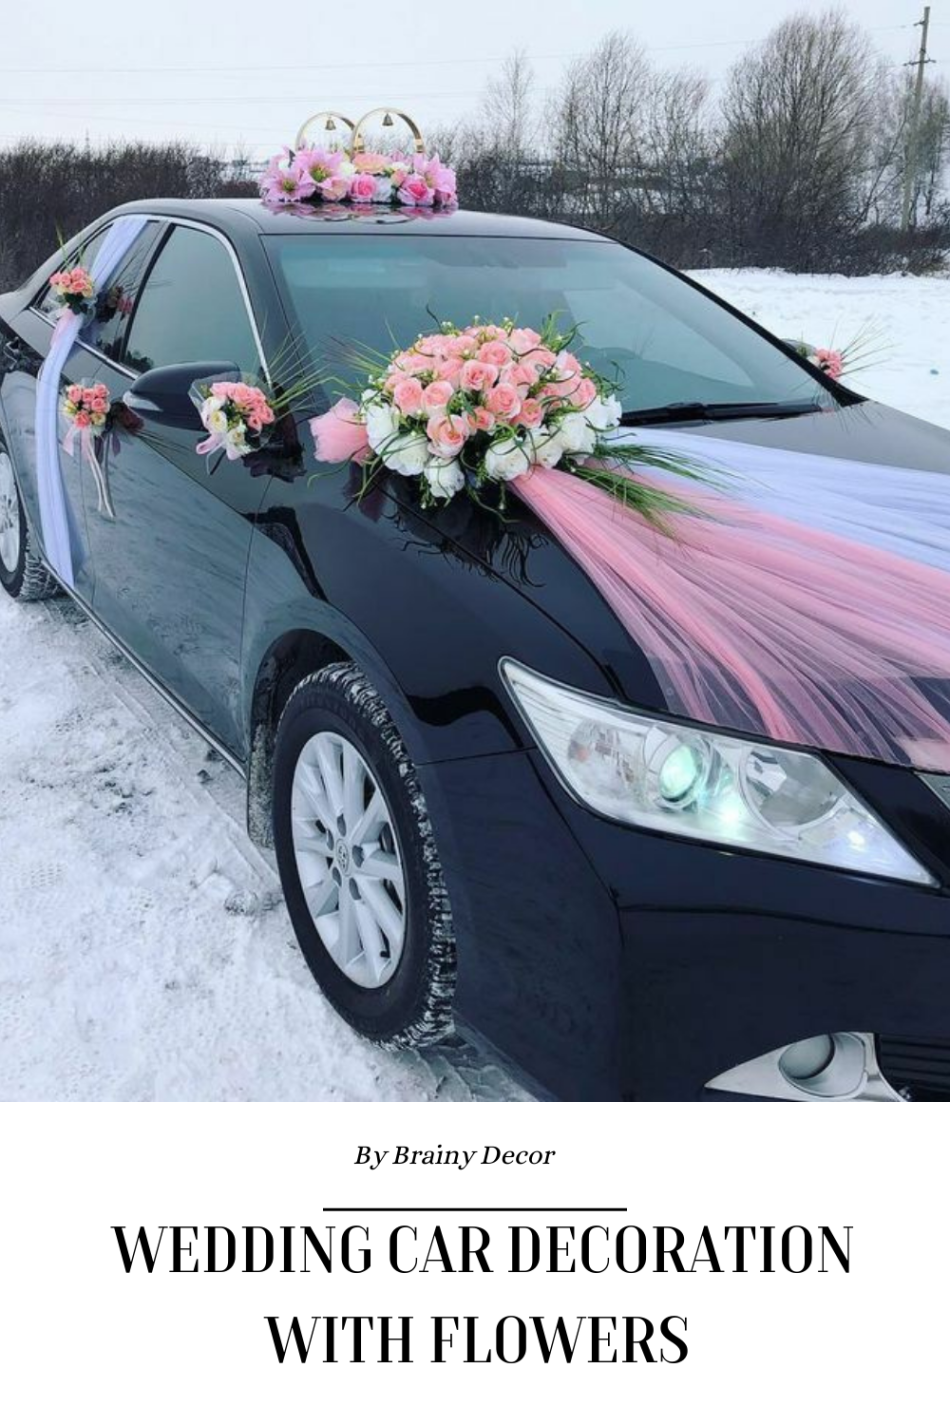 Get Wow-Worthy Wedding Car Decor Ideas That’ll Make Your Big Day Unforgettable!